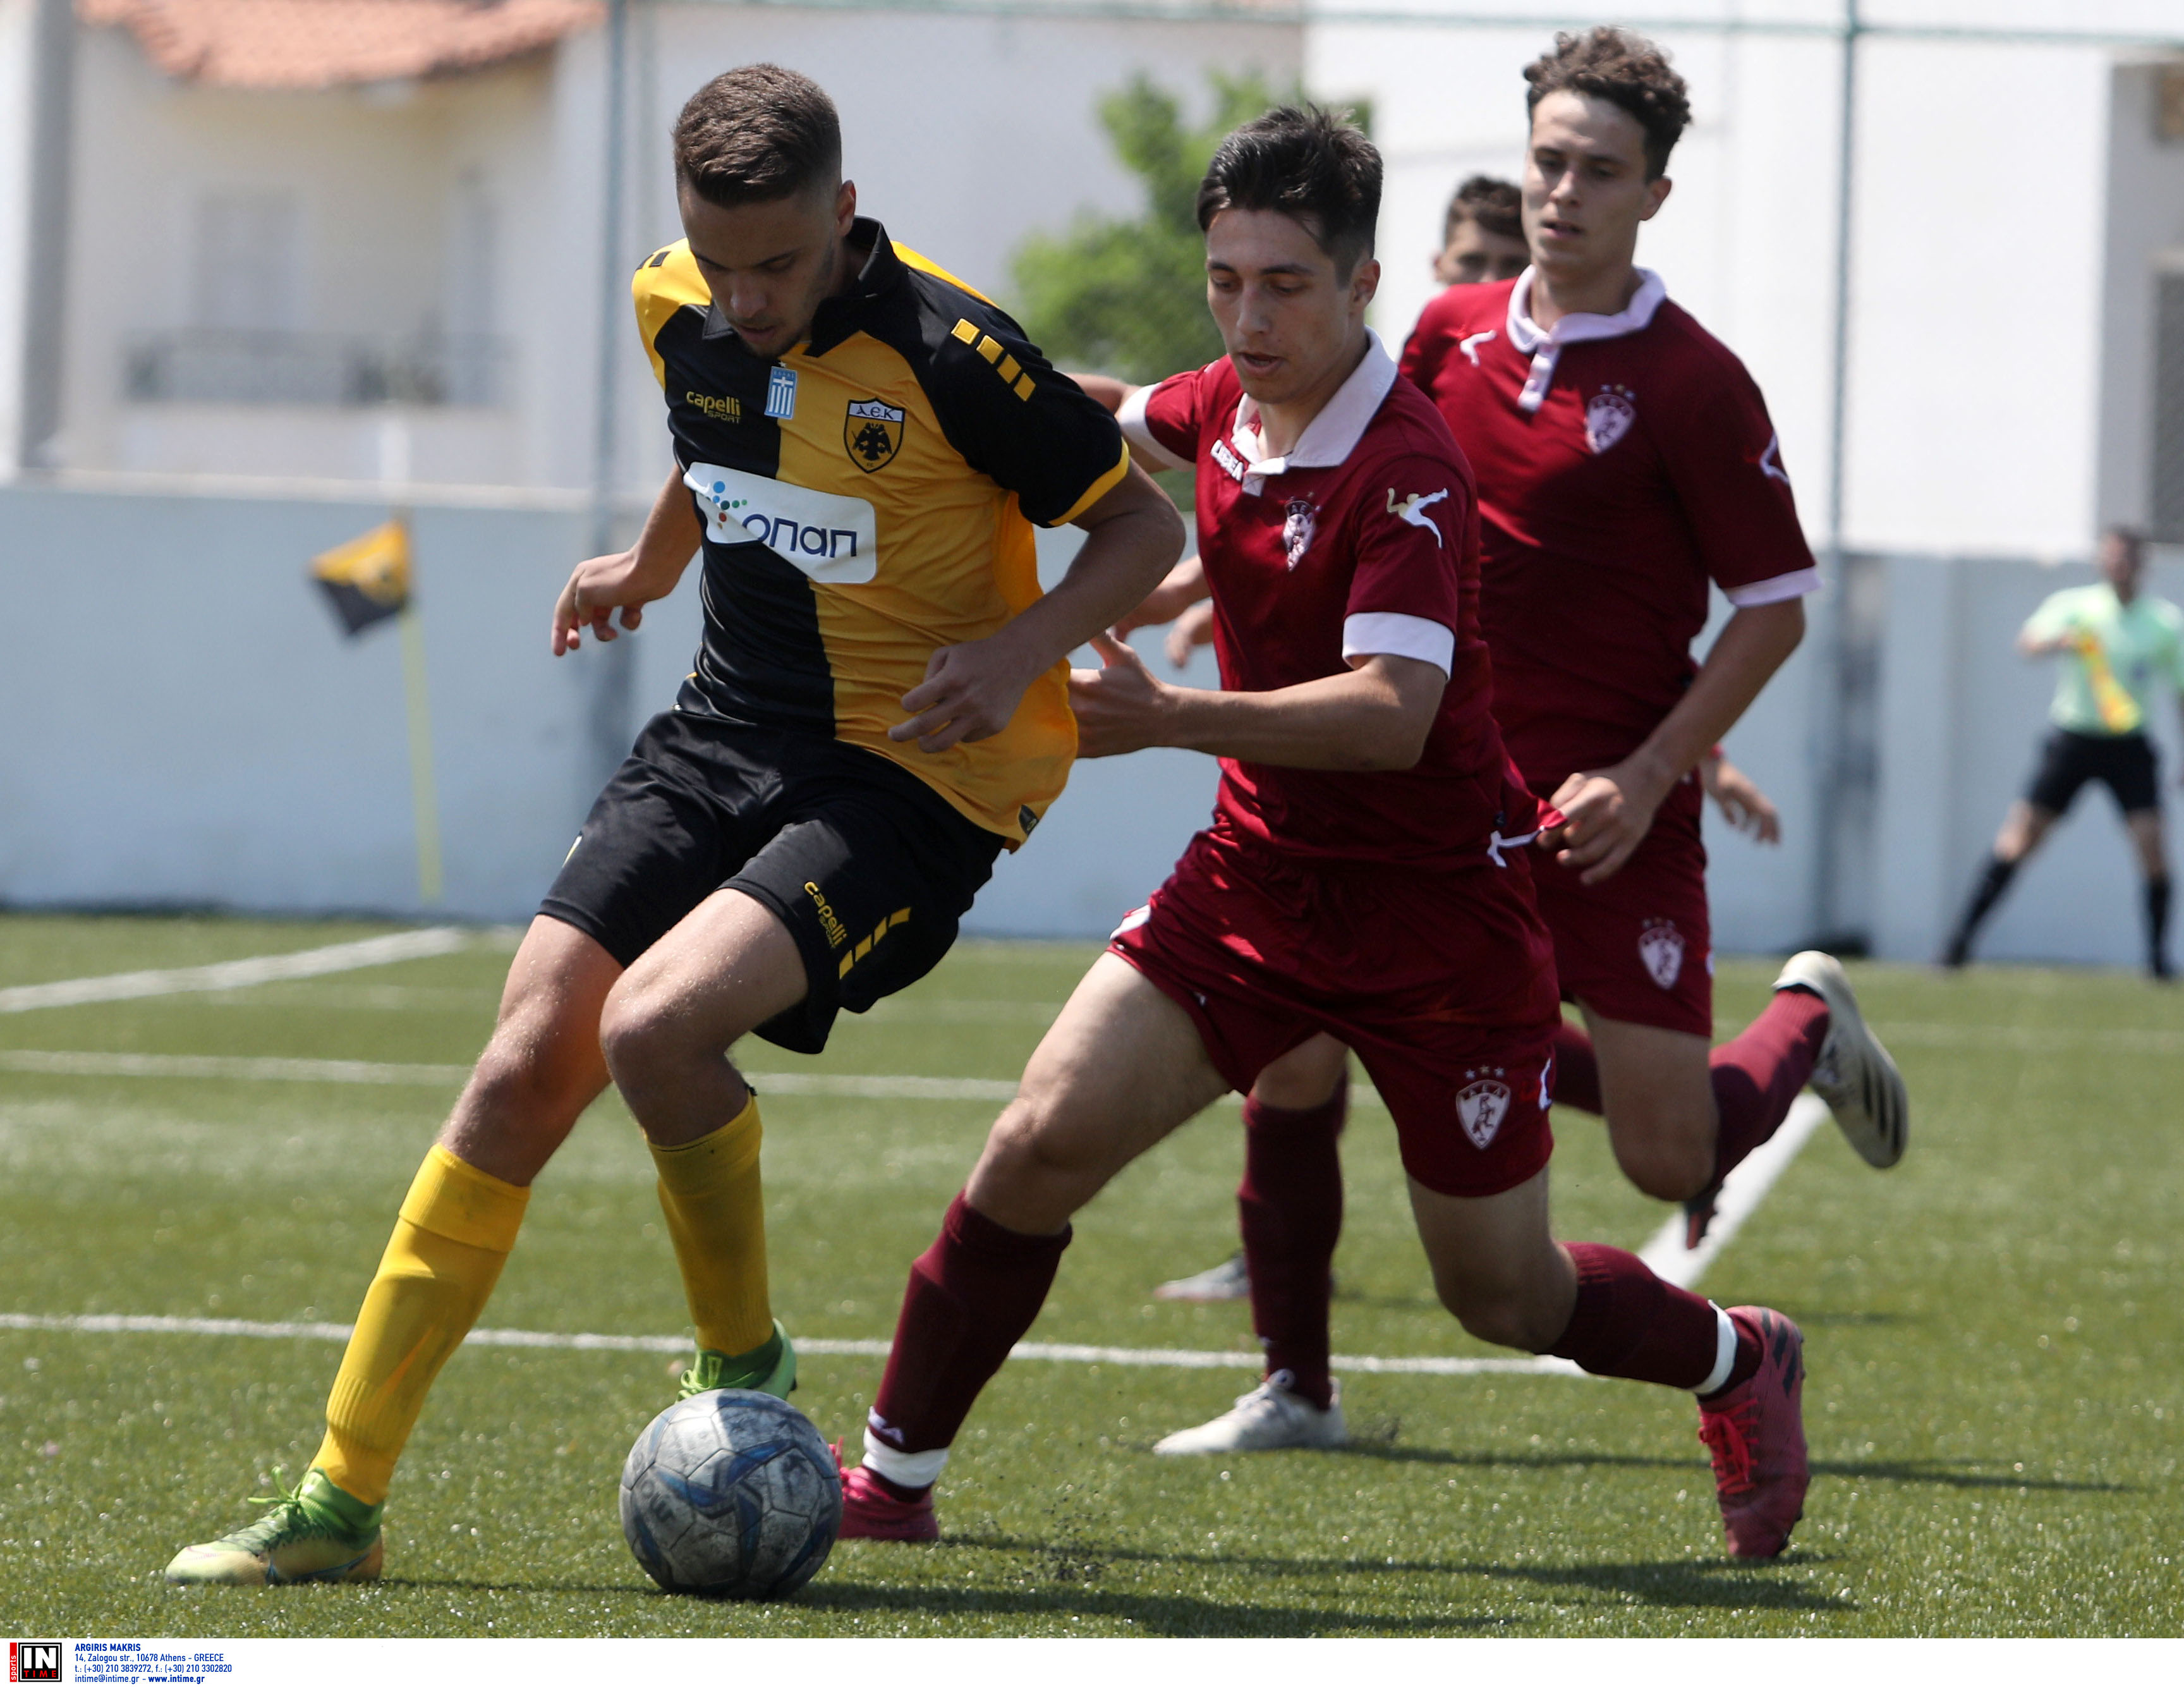 Εικόνες από το ματς της Κ19 ΑΕΚ-Λάρισα